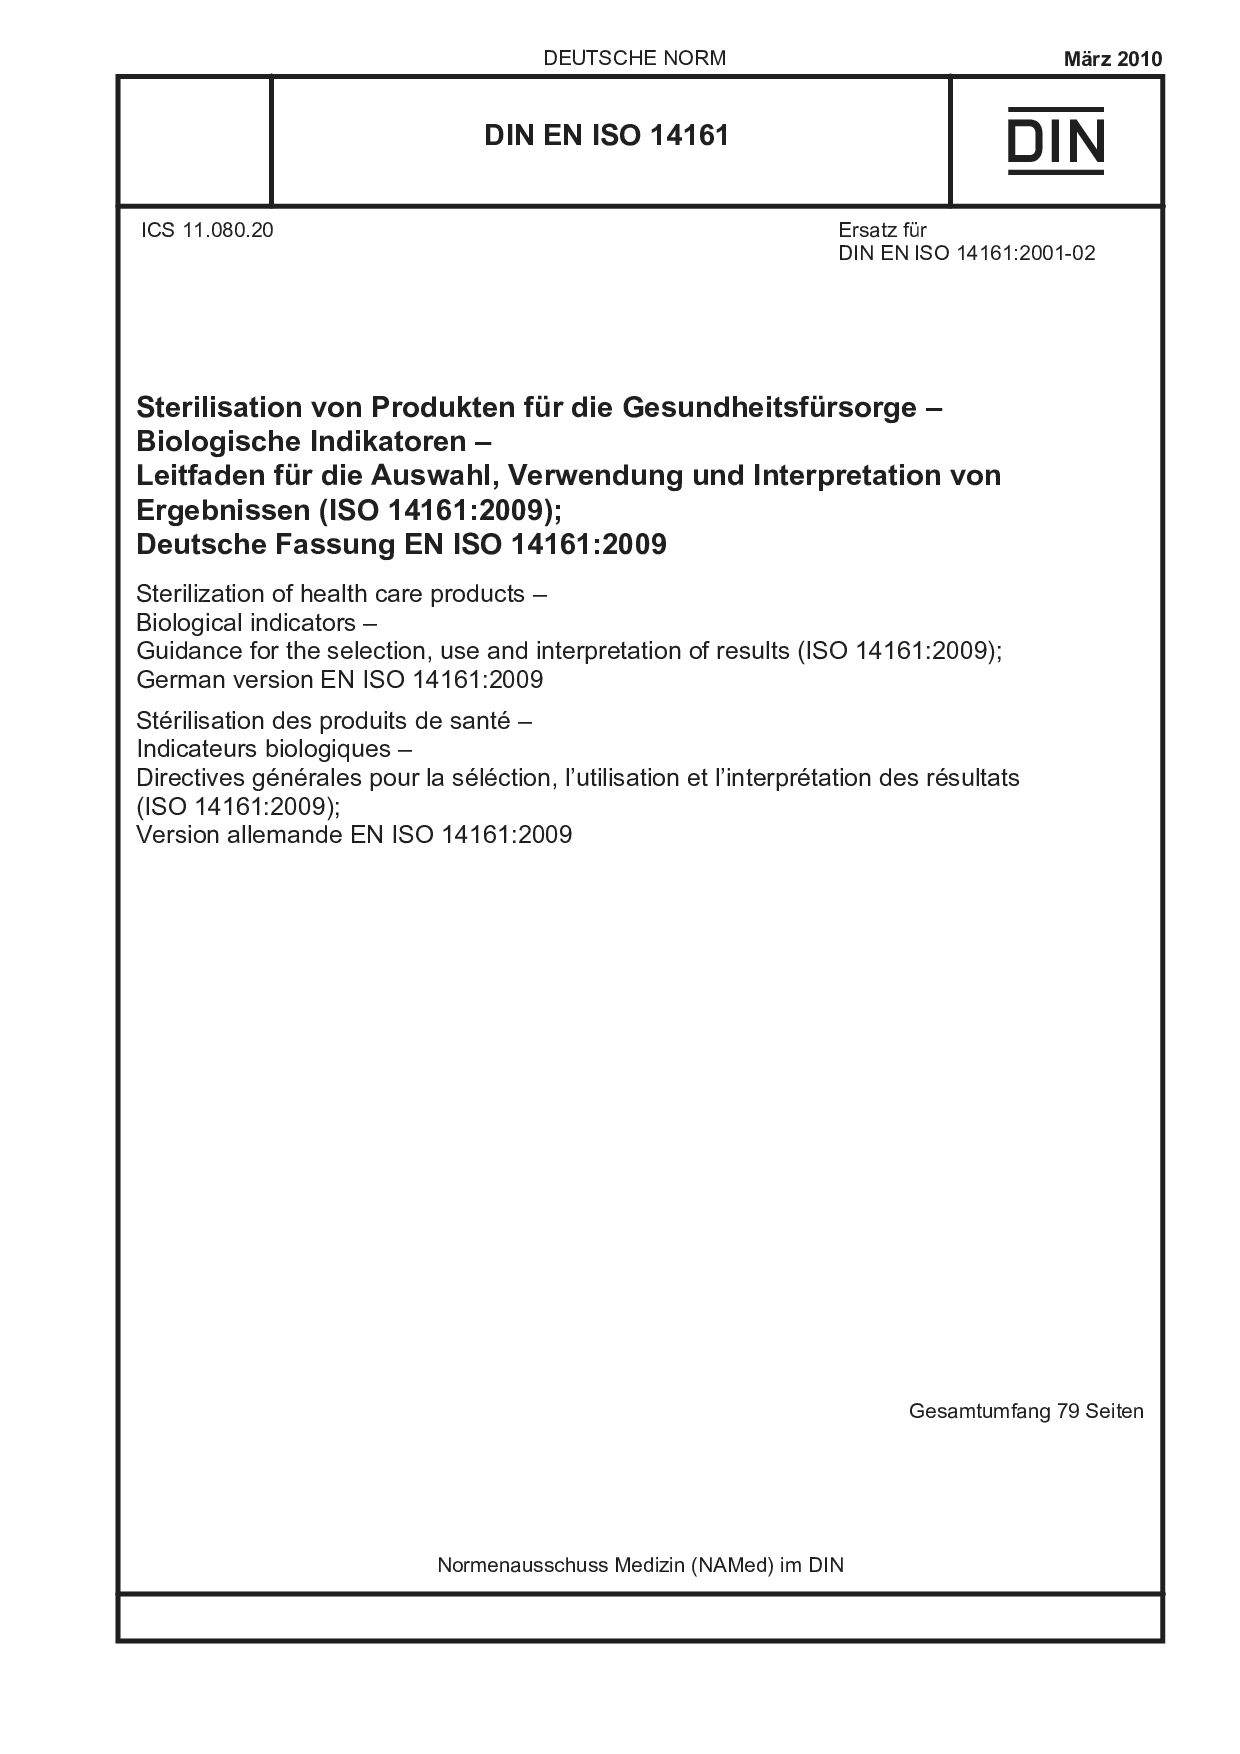 DIN EN ISO 14161:2010封面图